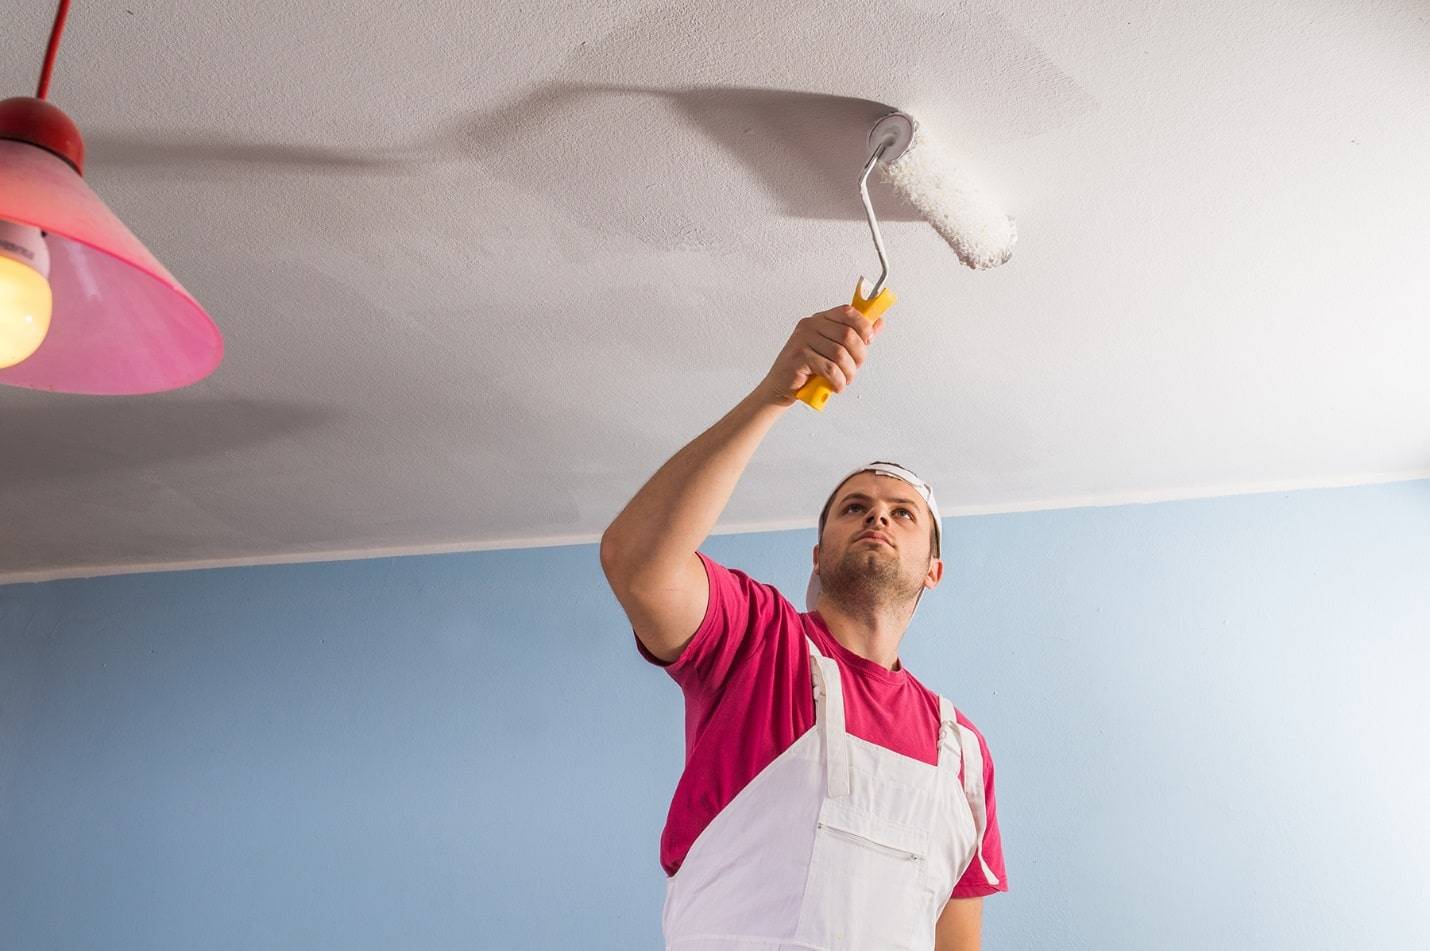 Пятна и разводы на потолке после покраски: в чем причина и как исправить? | домфронт